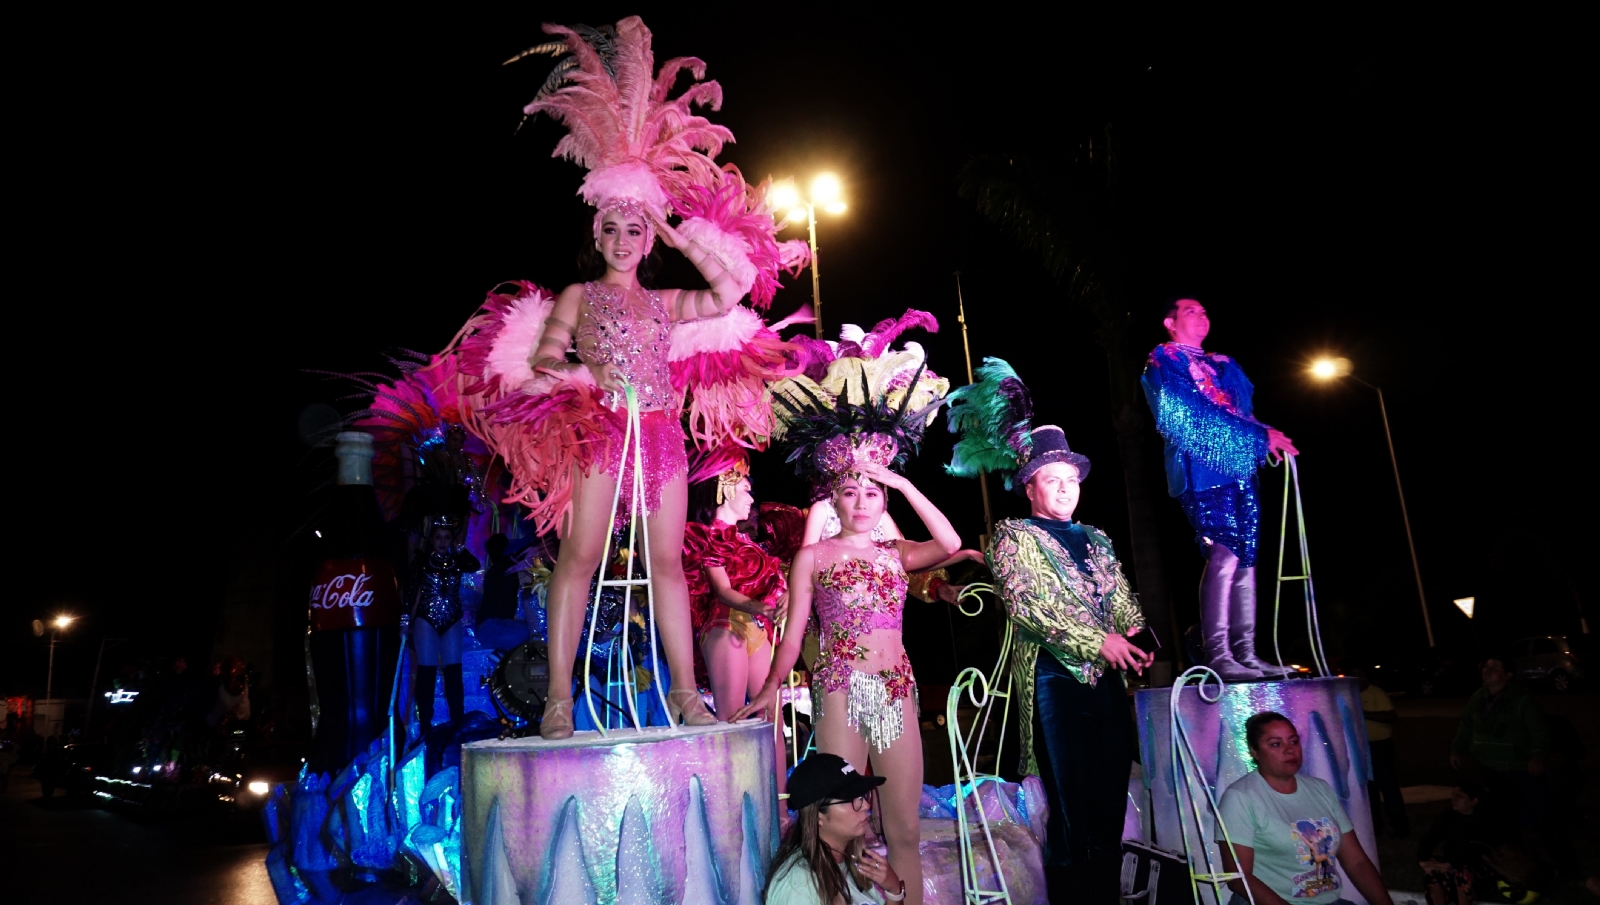 Carnaval de Campeche: 4 de 13 municipios le dicen no al Rey Momo ante el COVID